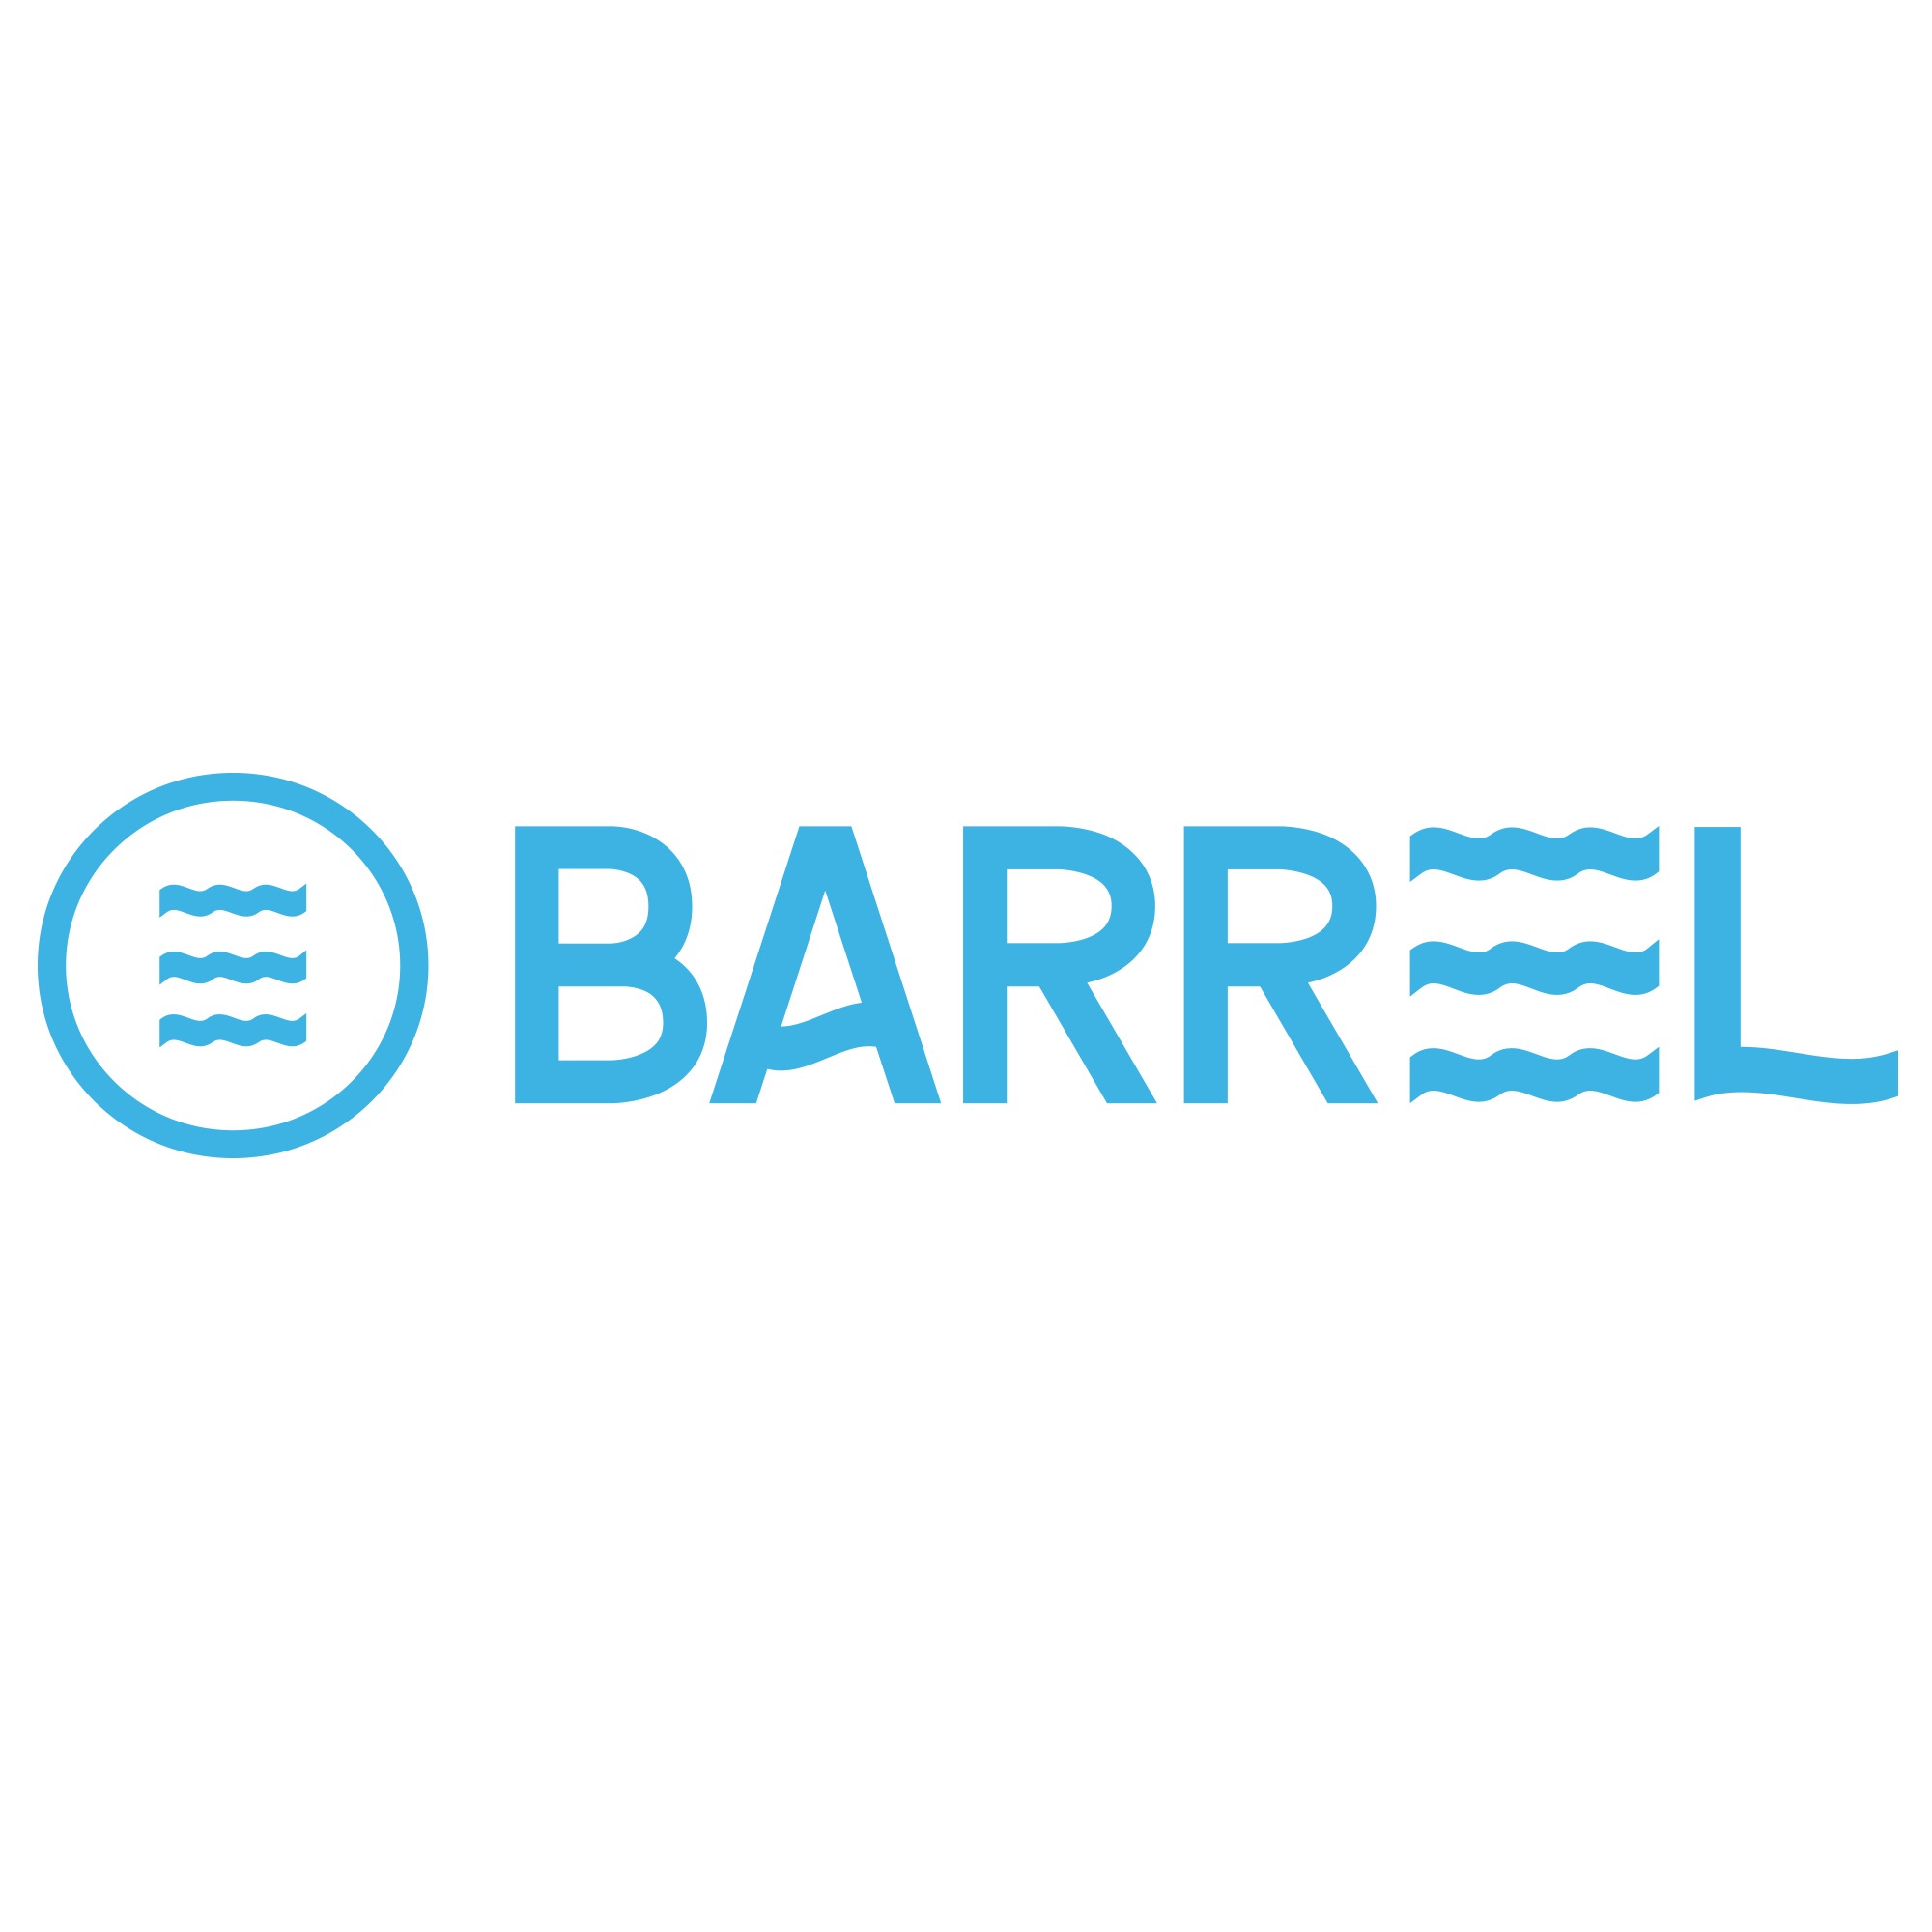 BARREL(韓國水上運動品牌)